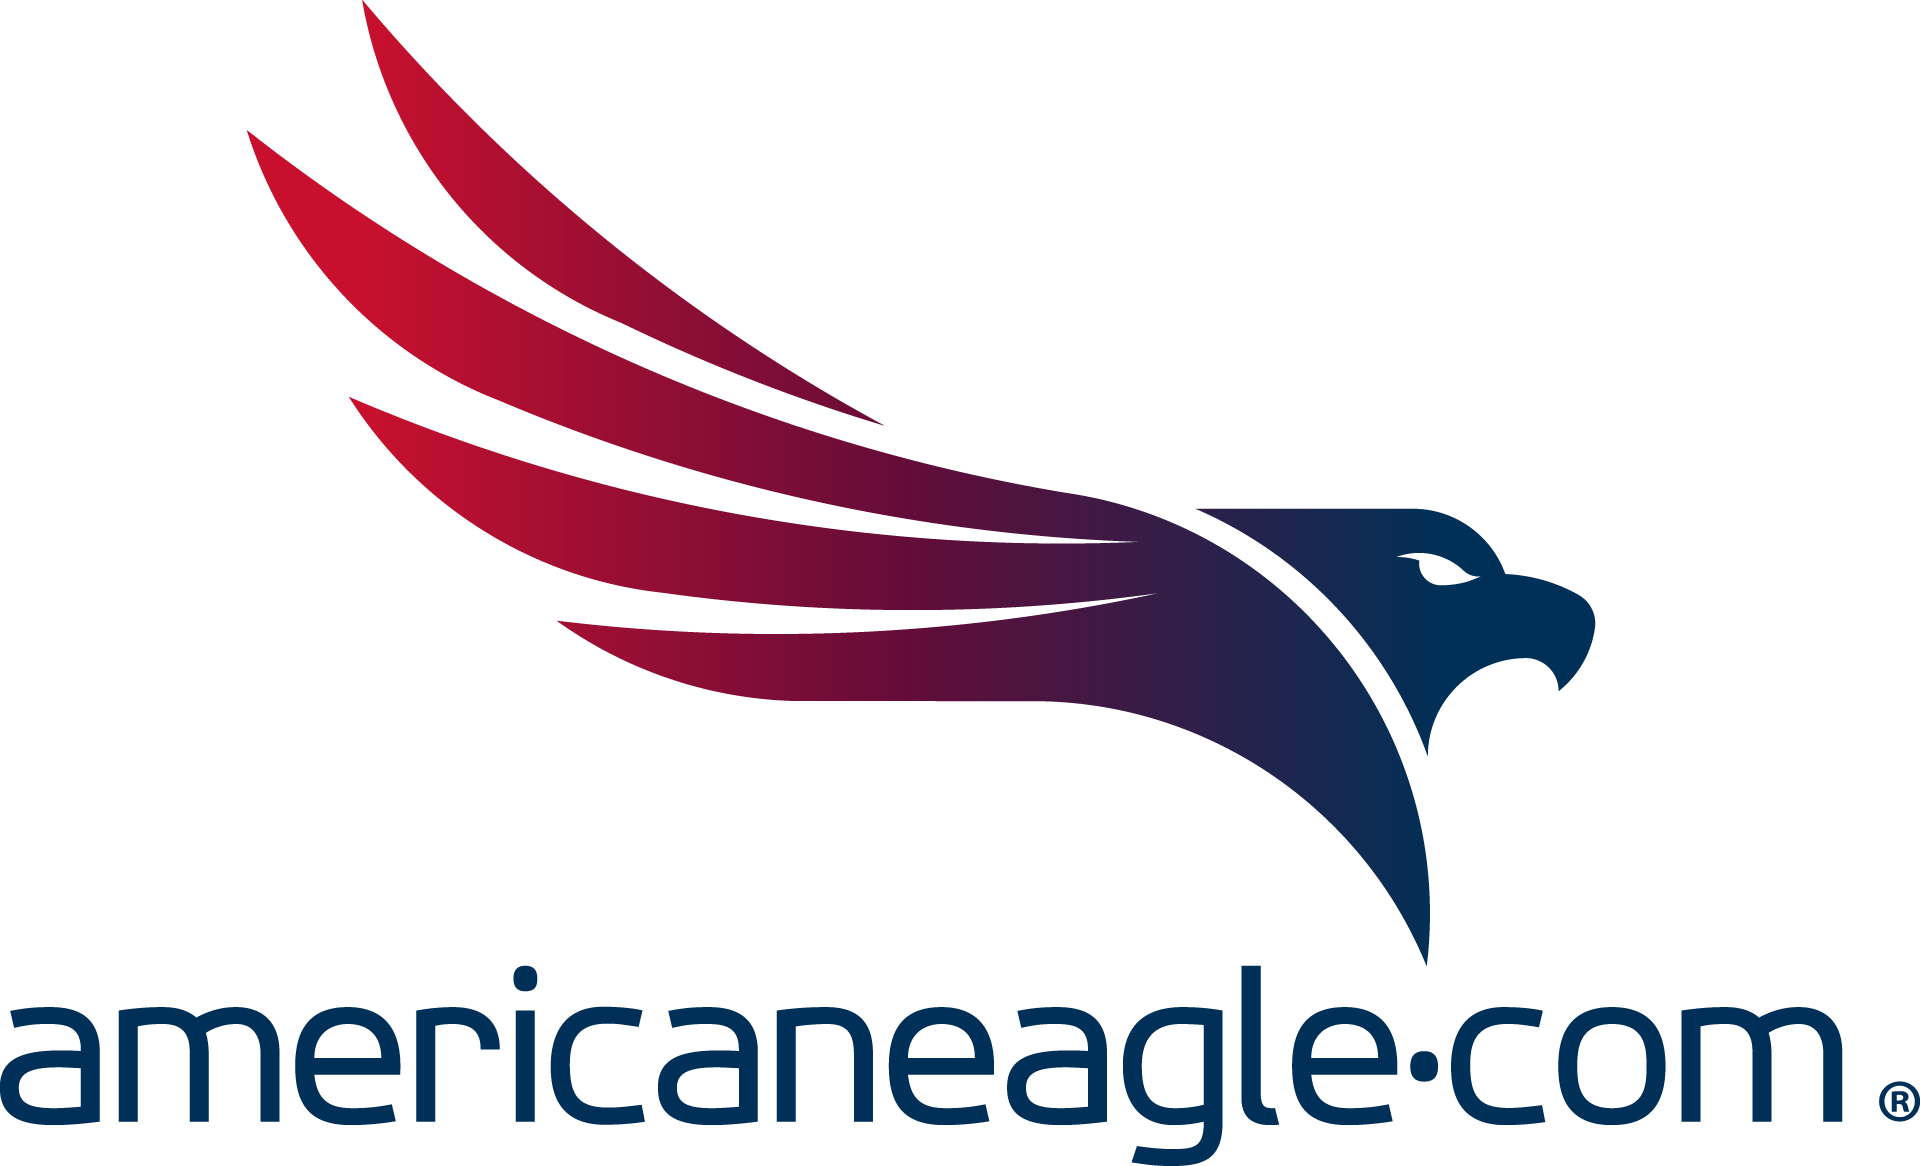 Americaneagle - Especialista en Implementación de BigCommerce | Agencia Digital de Servicios Integrales